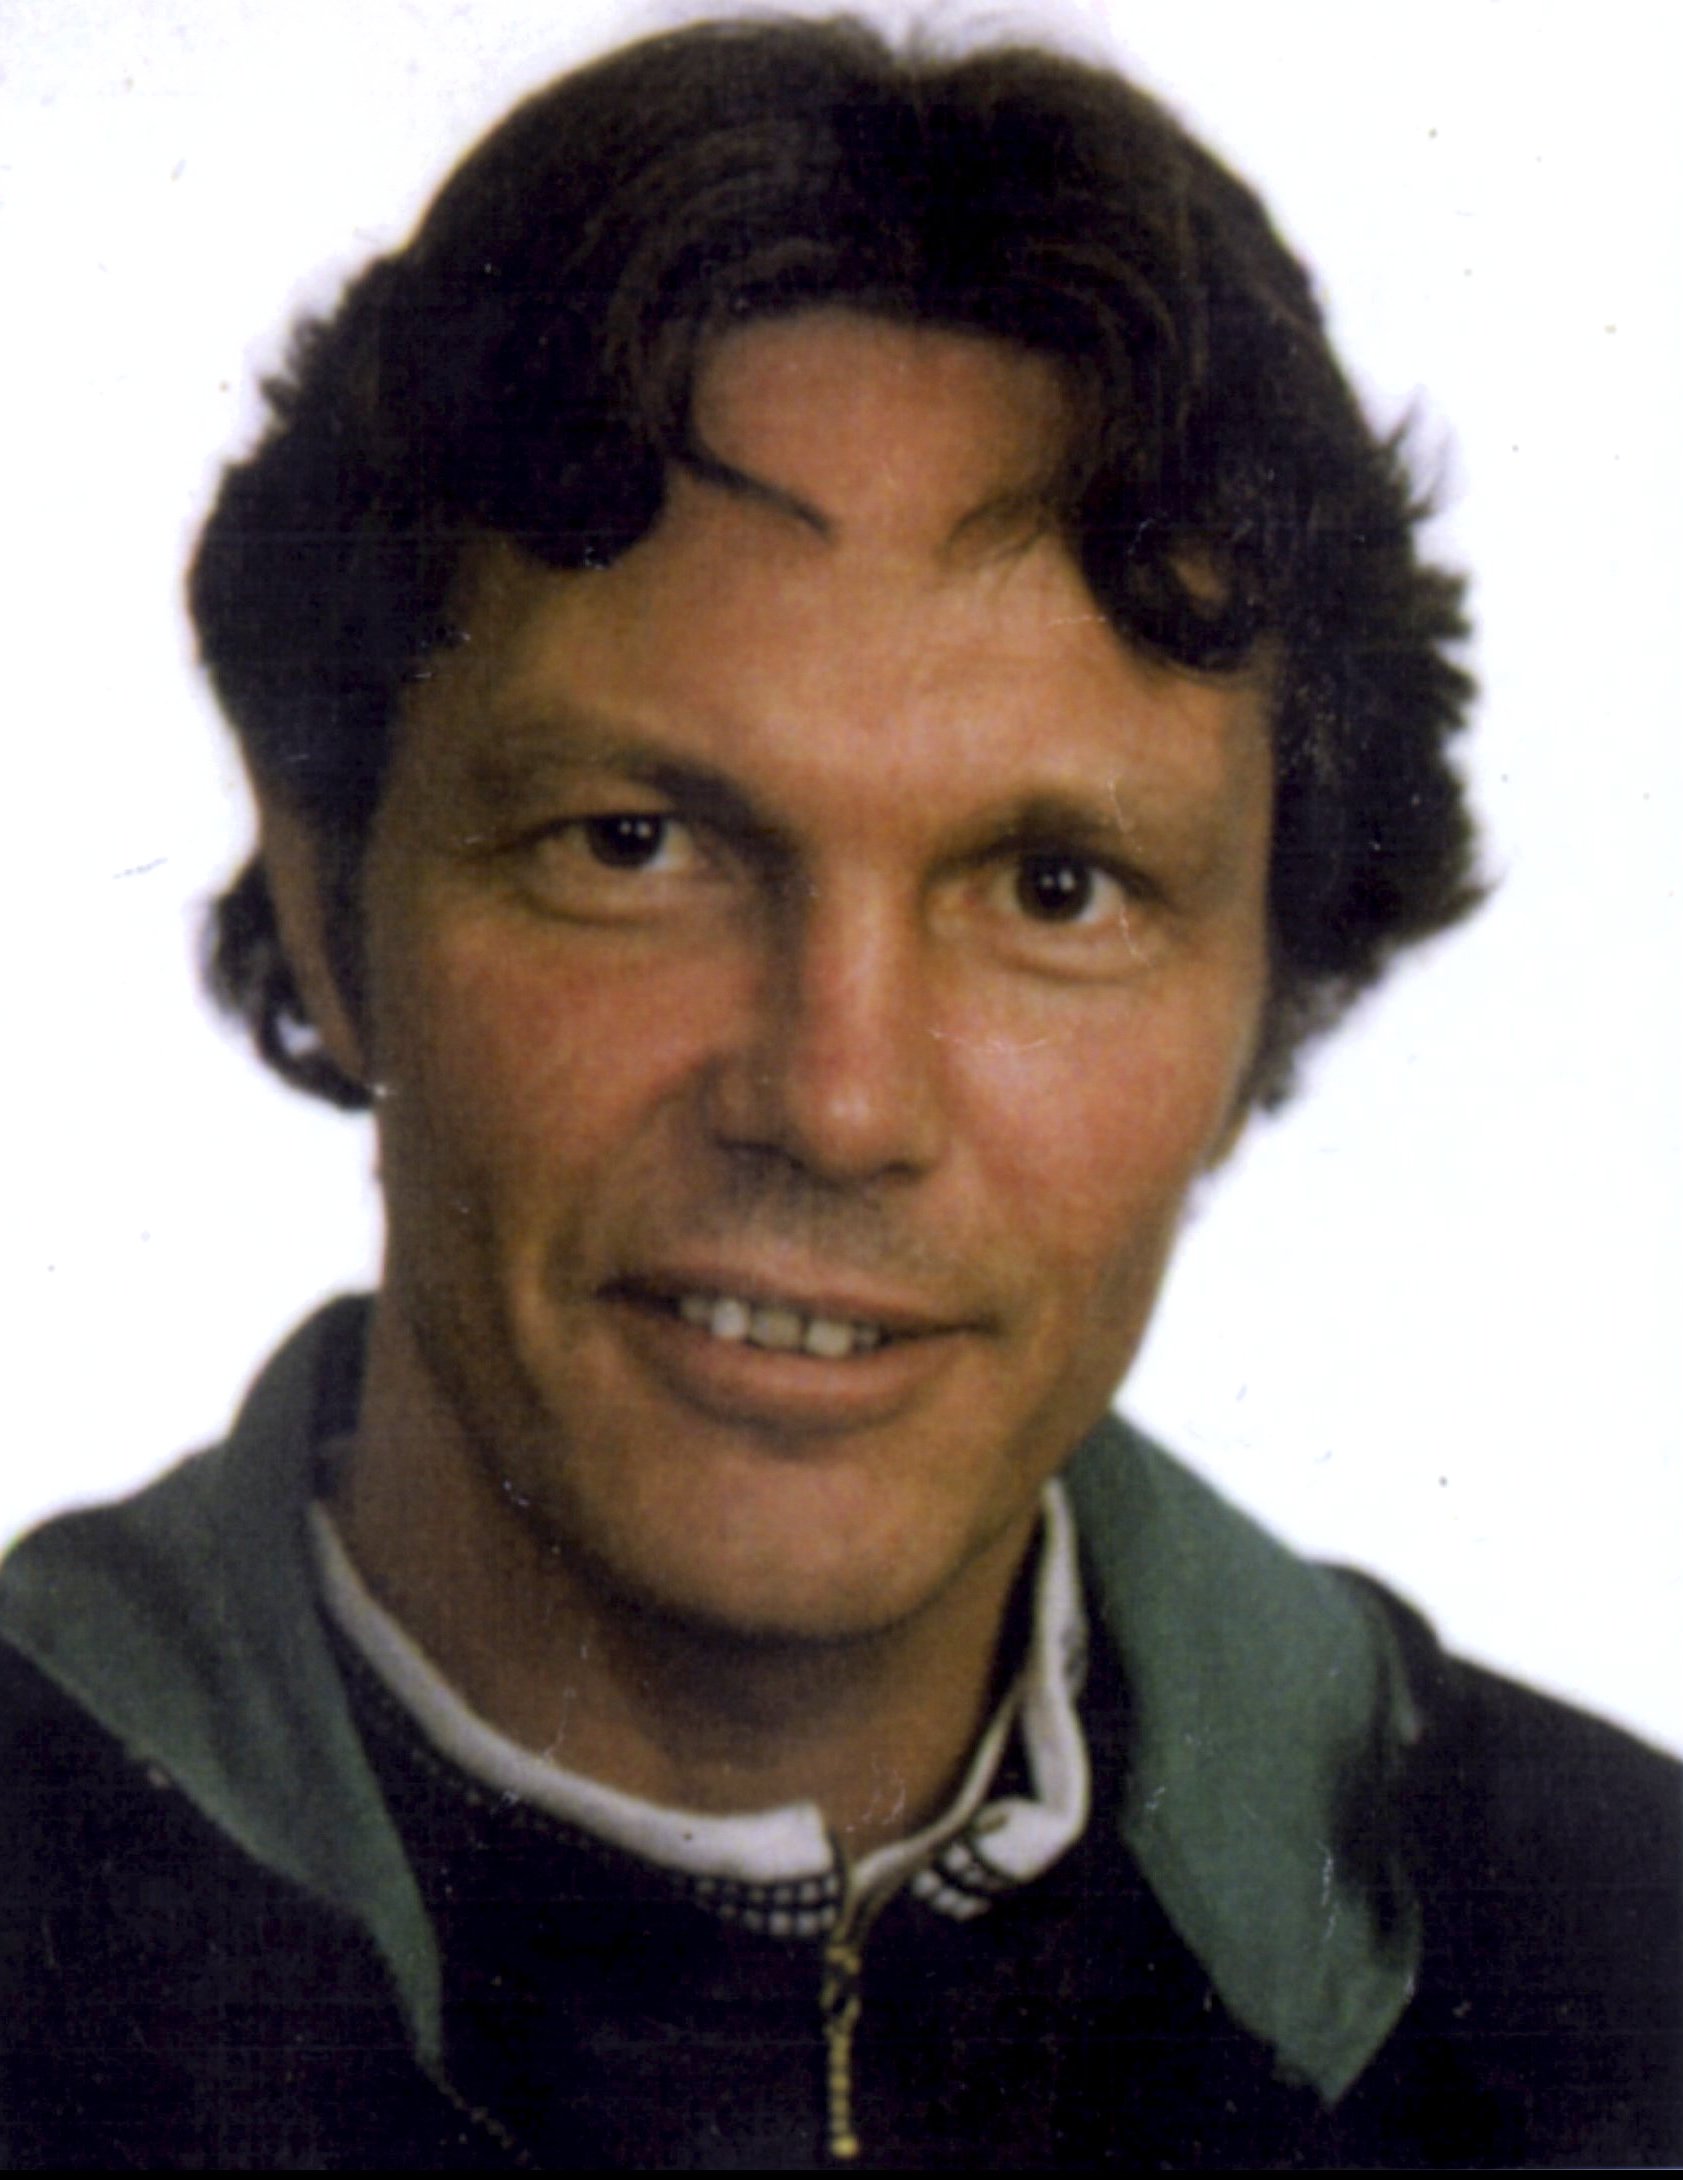 I maj 1995 dog Osmo Vallo på ett polishäkte i Karlstad efter att poliser på ett liknande sätt suttit på hans rygg och skurit av andningsvägarna.